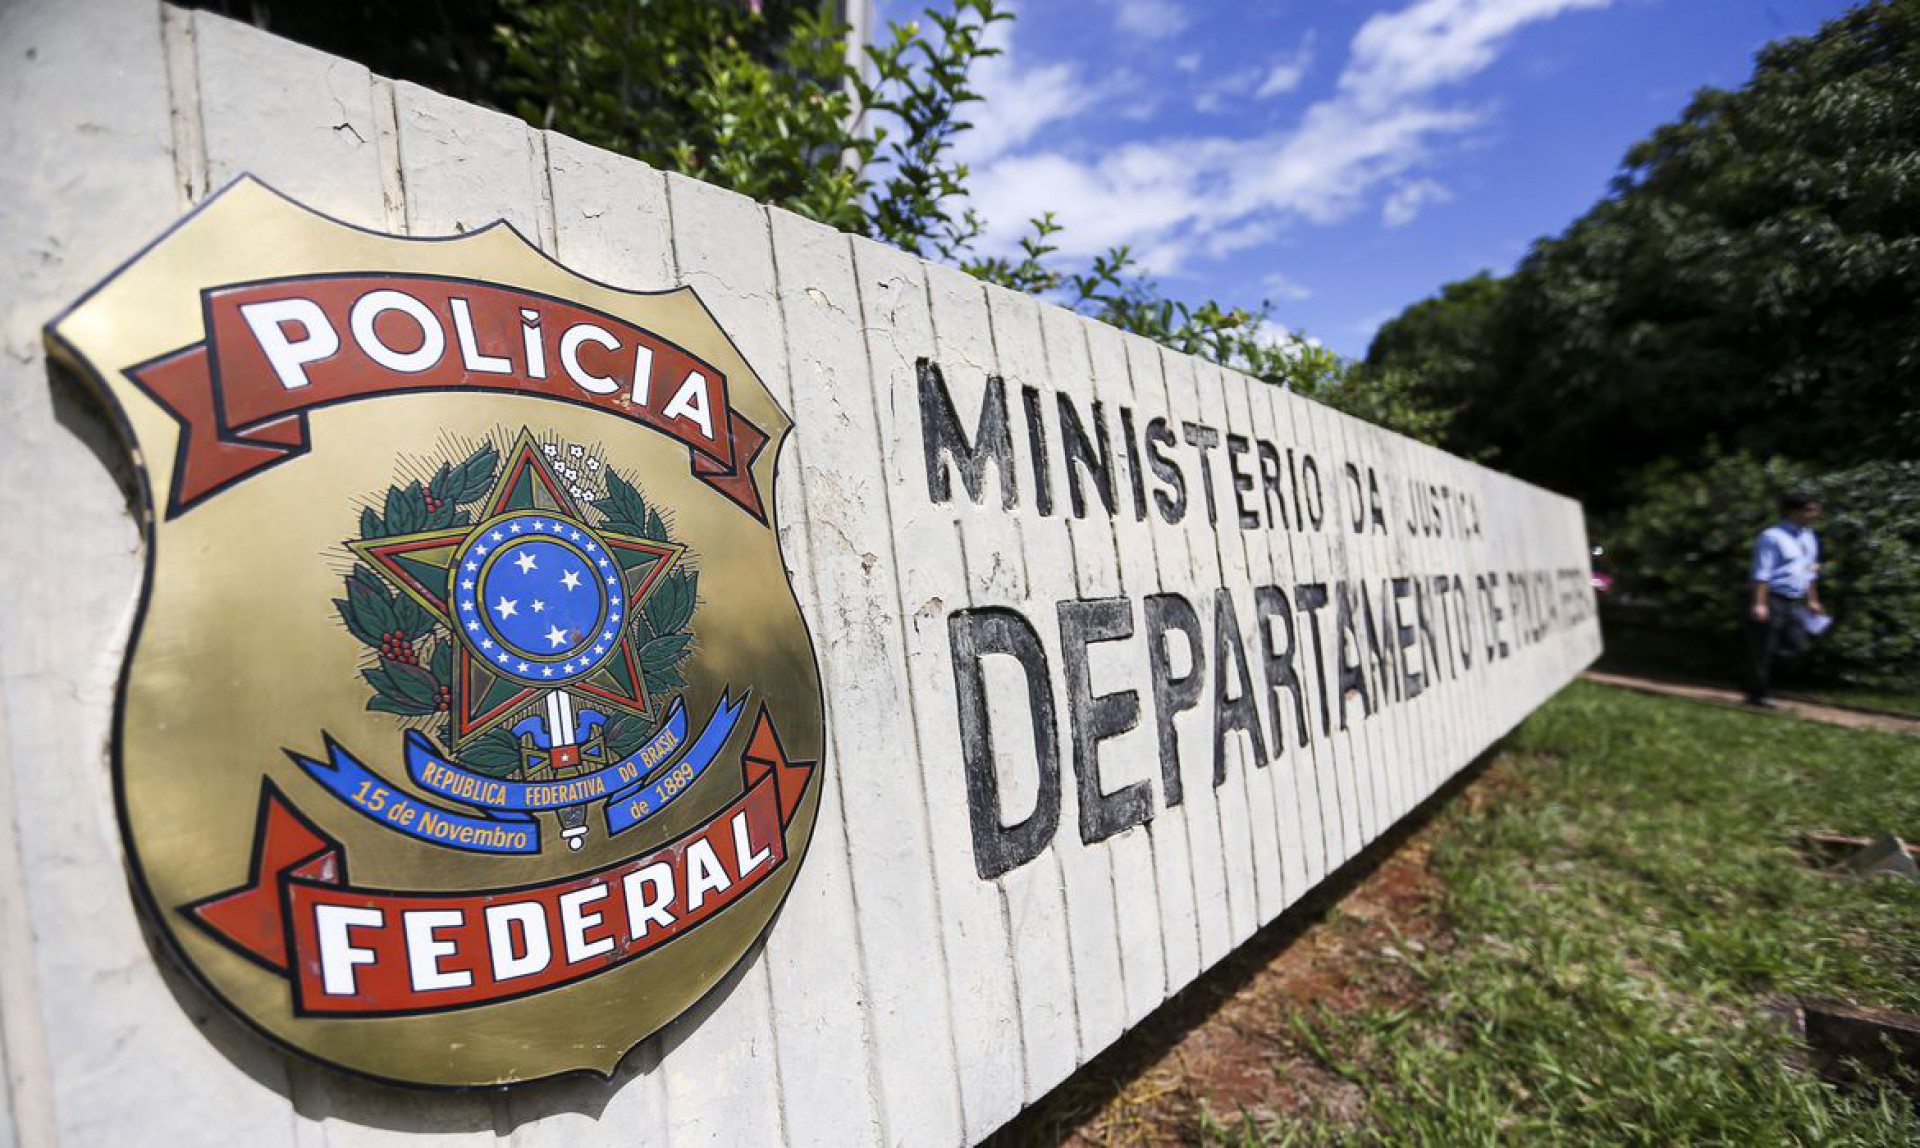 Sede da Polícia Federal em Brasília (Foto: Marcelo Camargo/Agência Brasil)